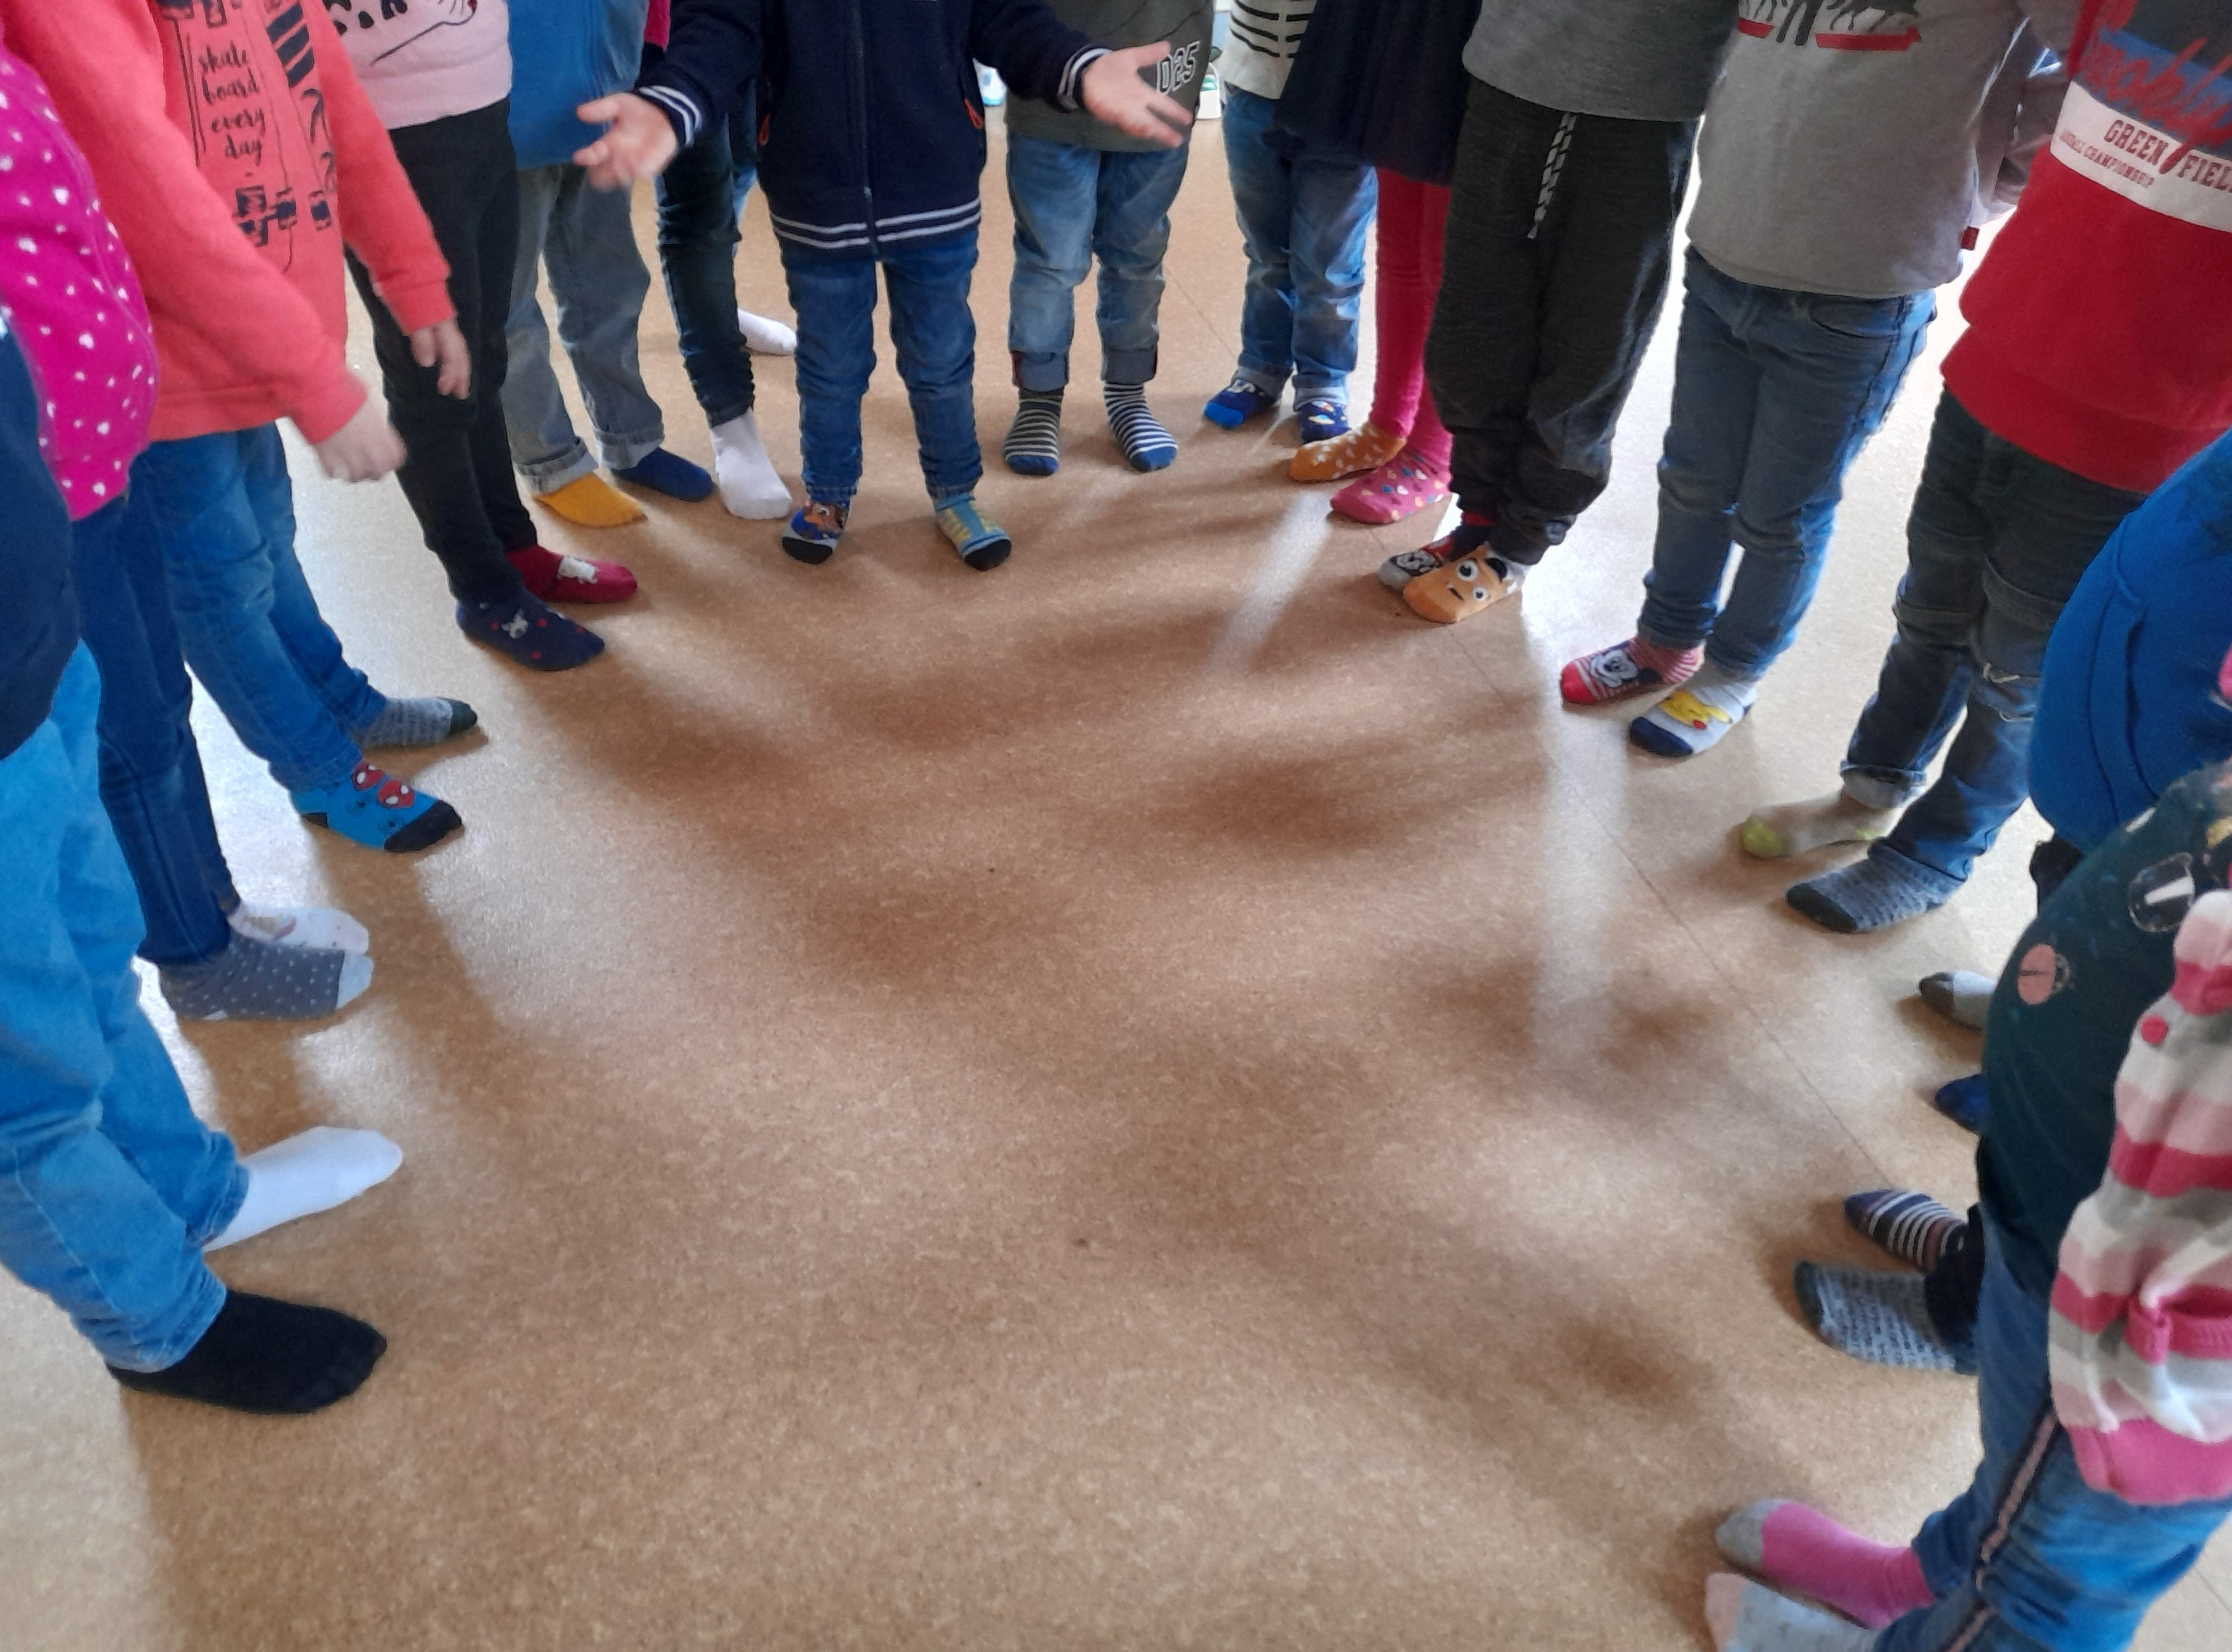 action solidarité : tous en chaussettes dépareillées! - Ecole St  Jean-Baptiste Collège Sainte Anne